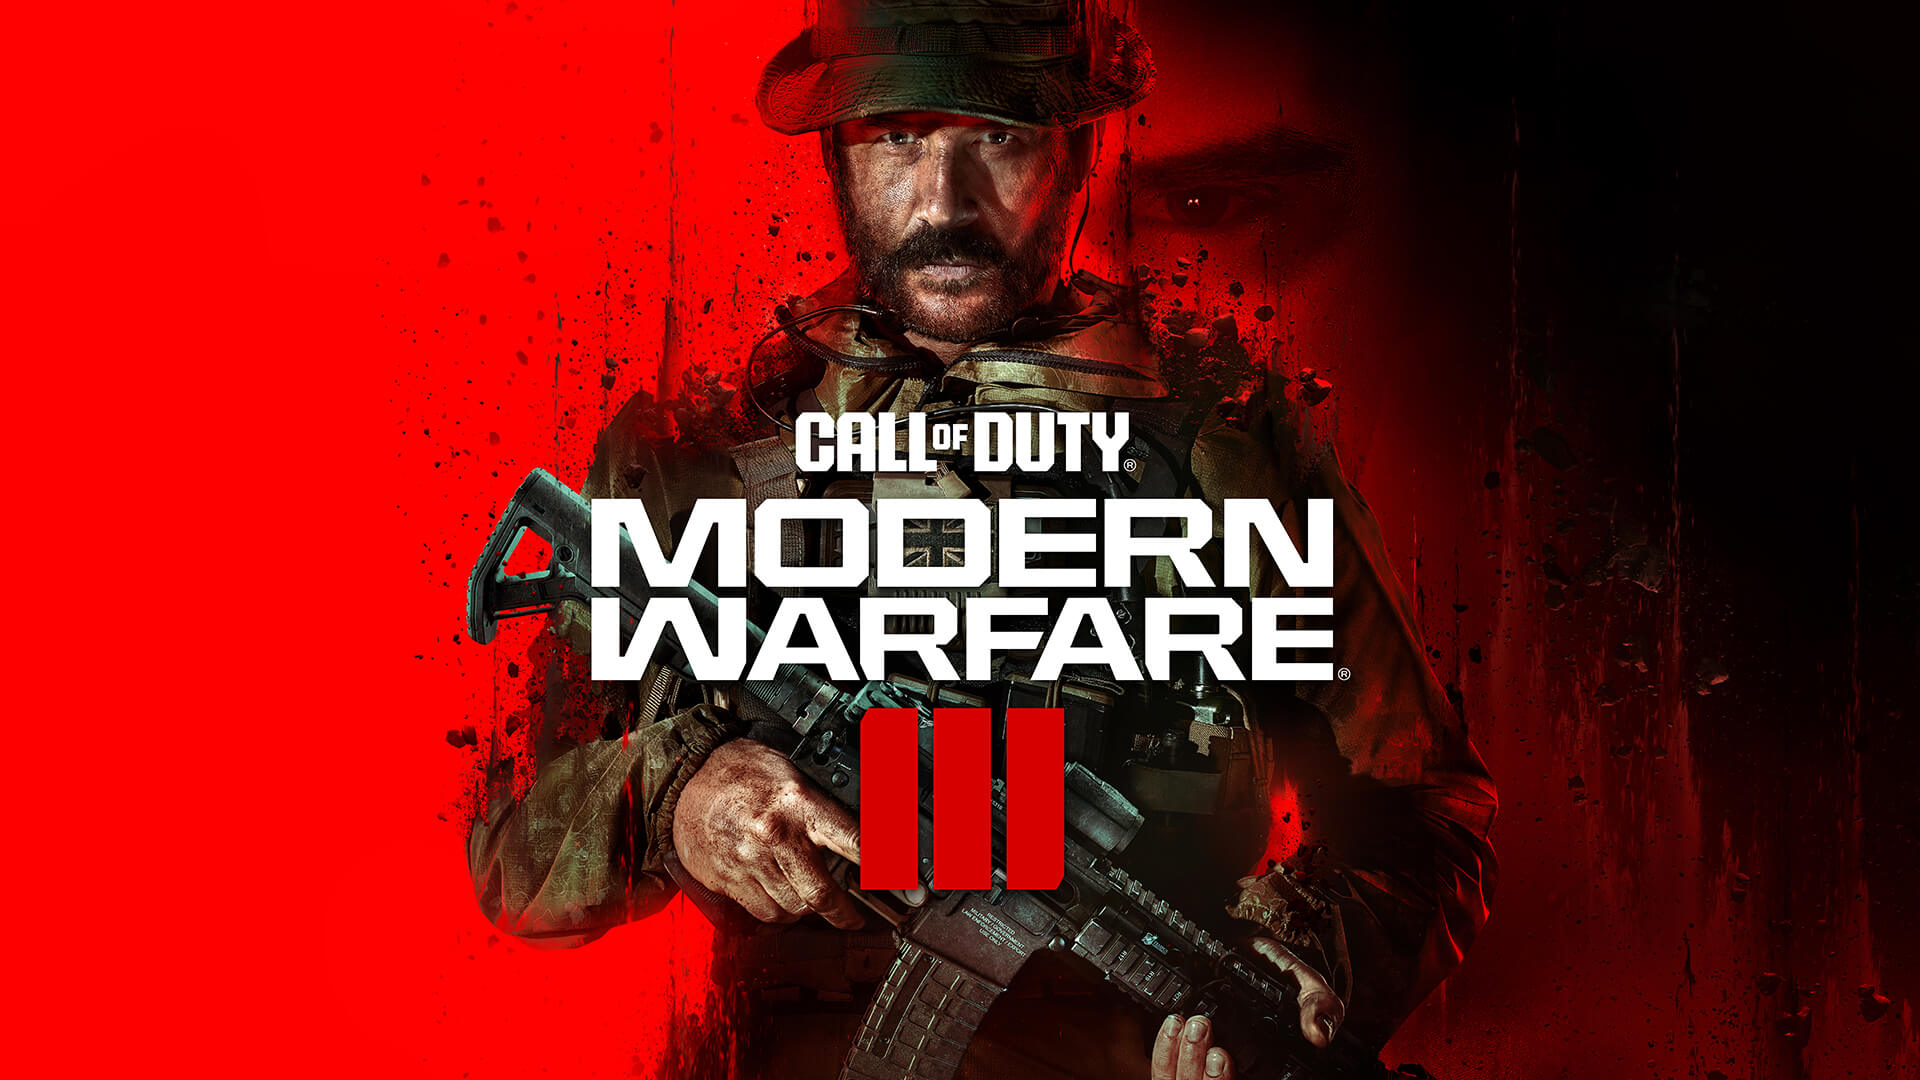 Cousin von The Rock ist jetzt in Call of Duty Modern Warfare 3 Titel